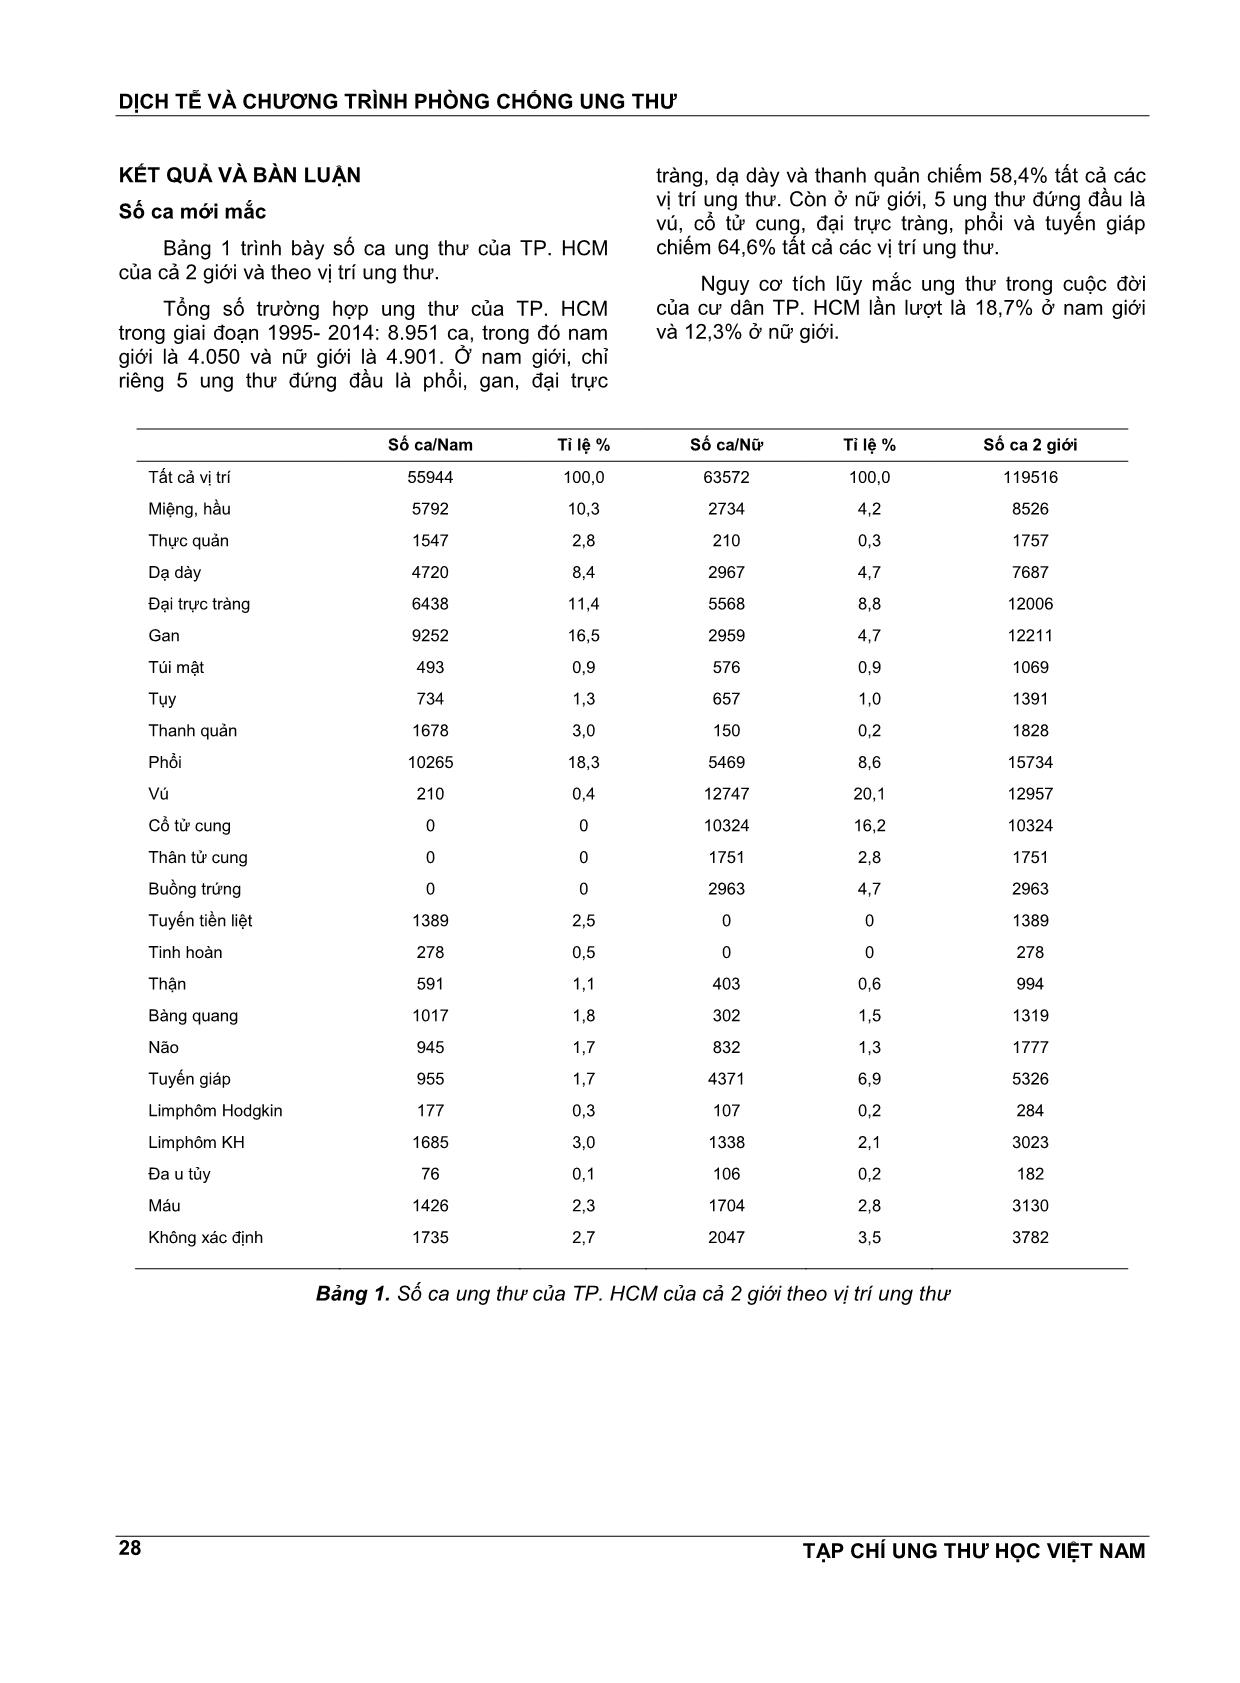 Kết quả ghi nhận ung thư quần thể thành phố Hồ Chí Minh 1995 - 2014 trang 3